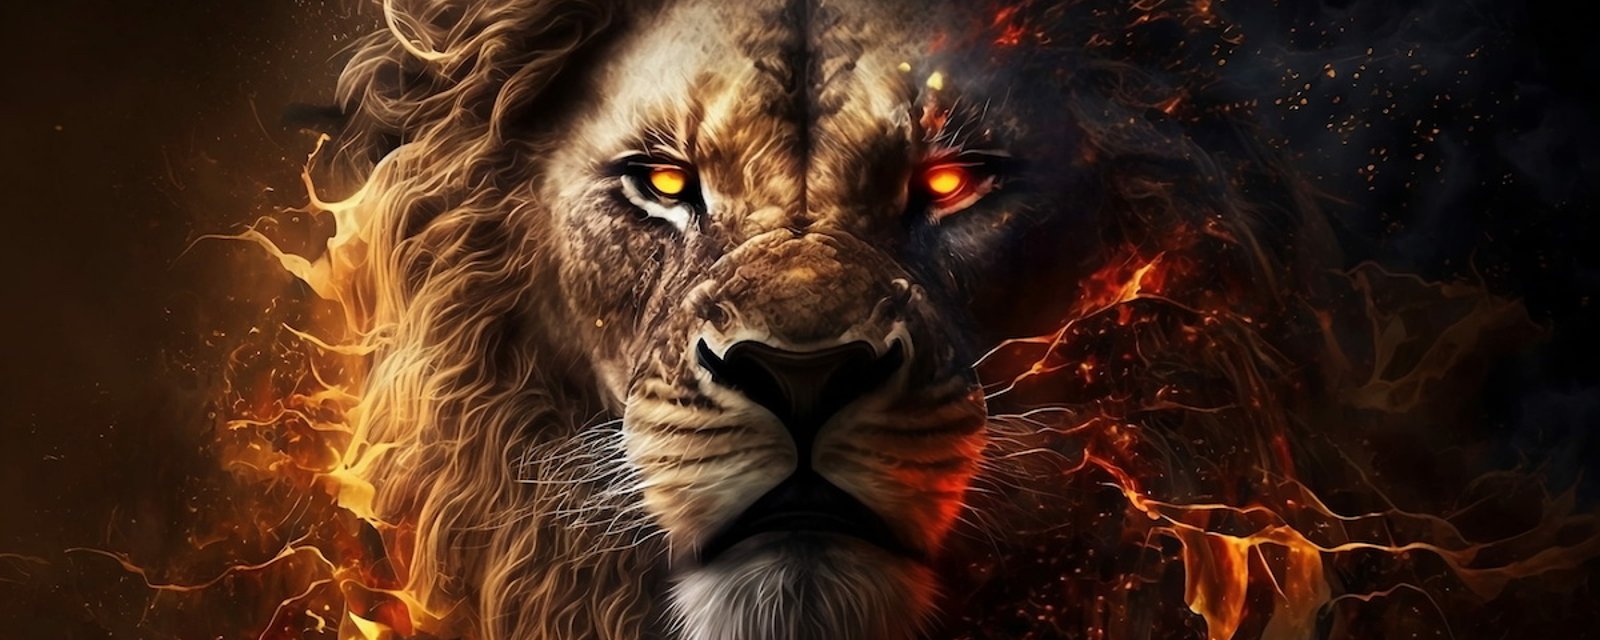 Les 10 plus grandes qualités des personnes nées sous le signe du Lion